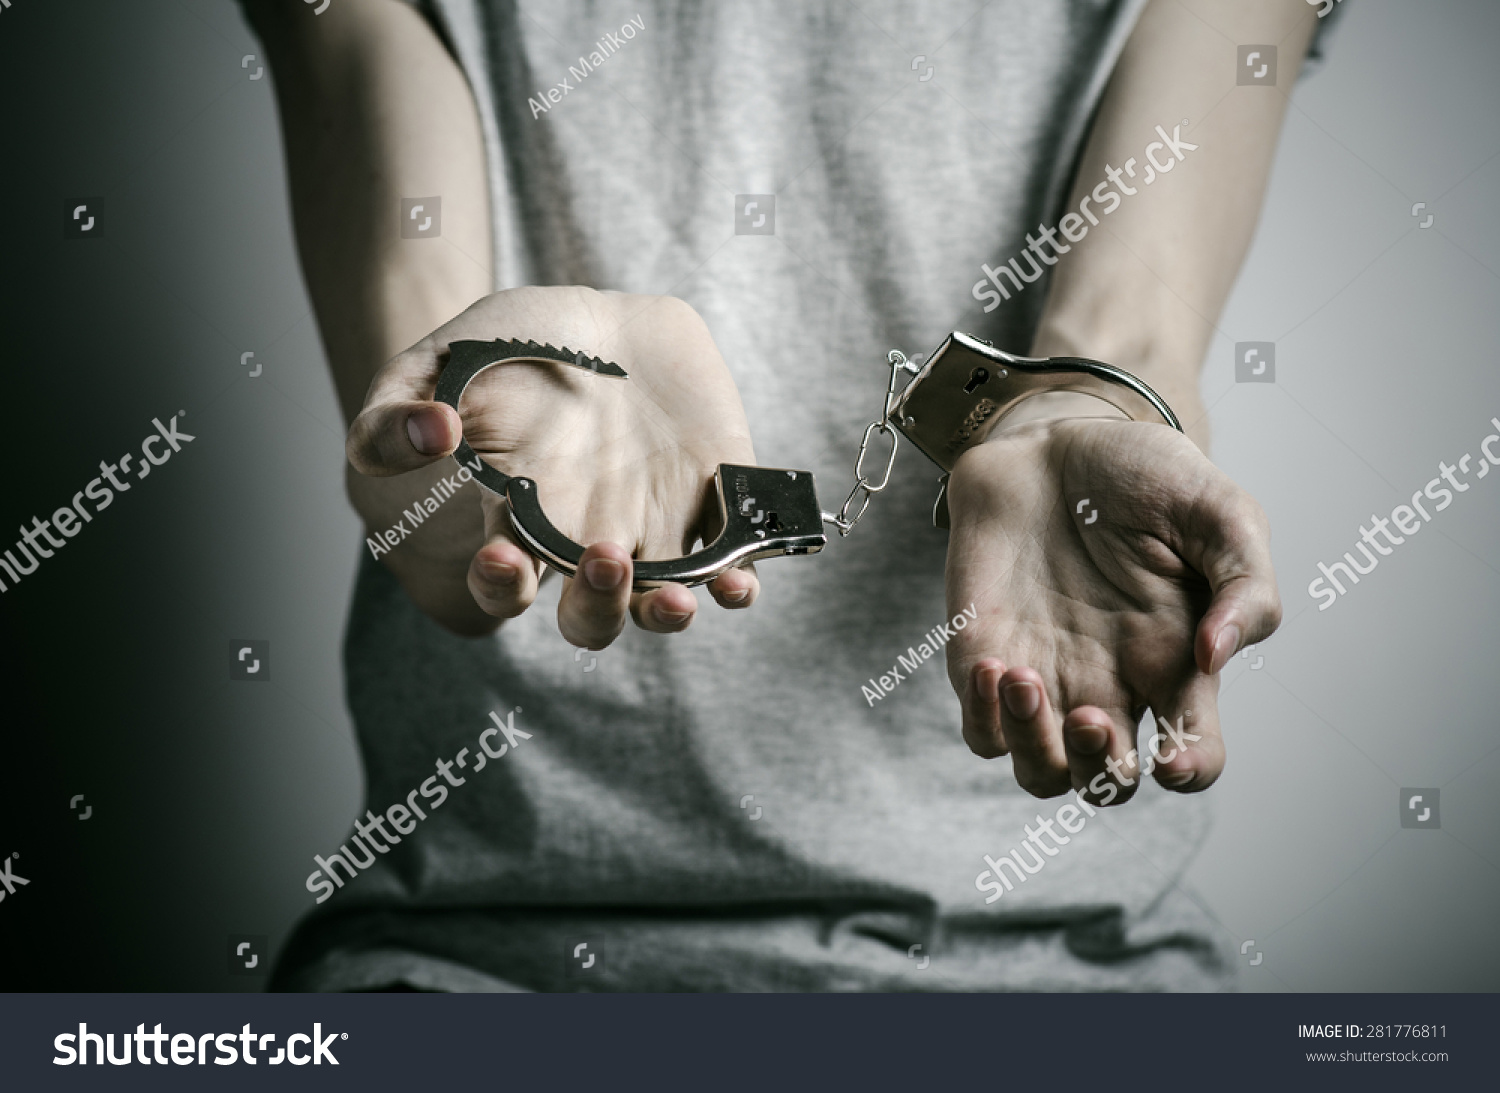 Footjob fusstreffen handschellen cuffs images